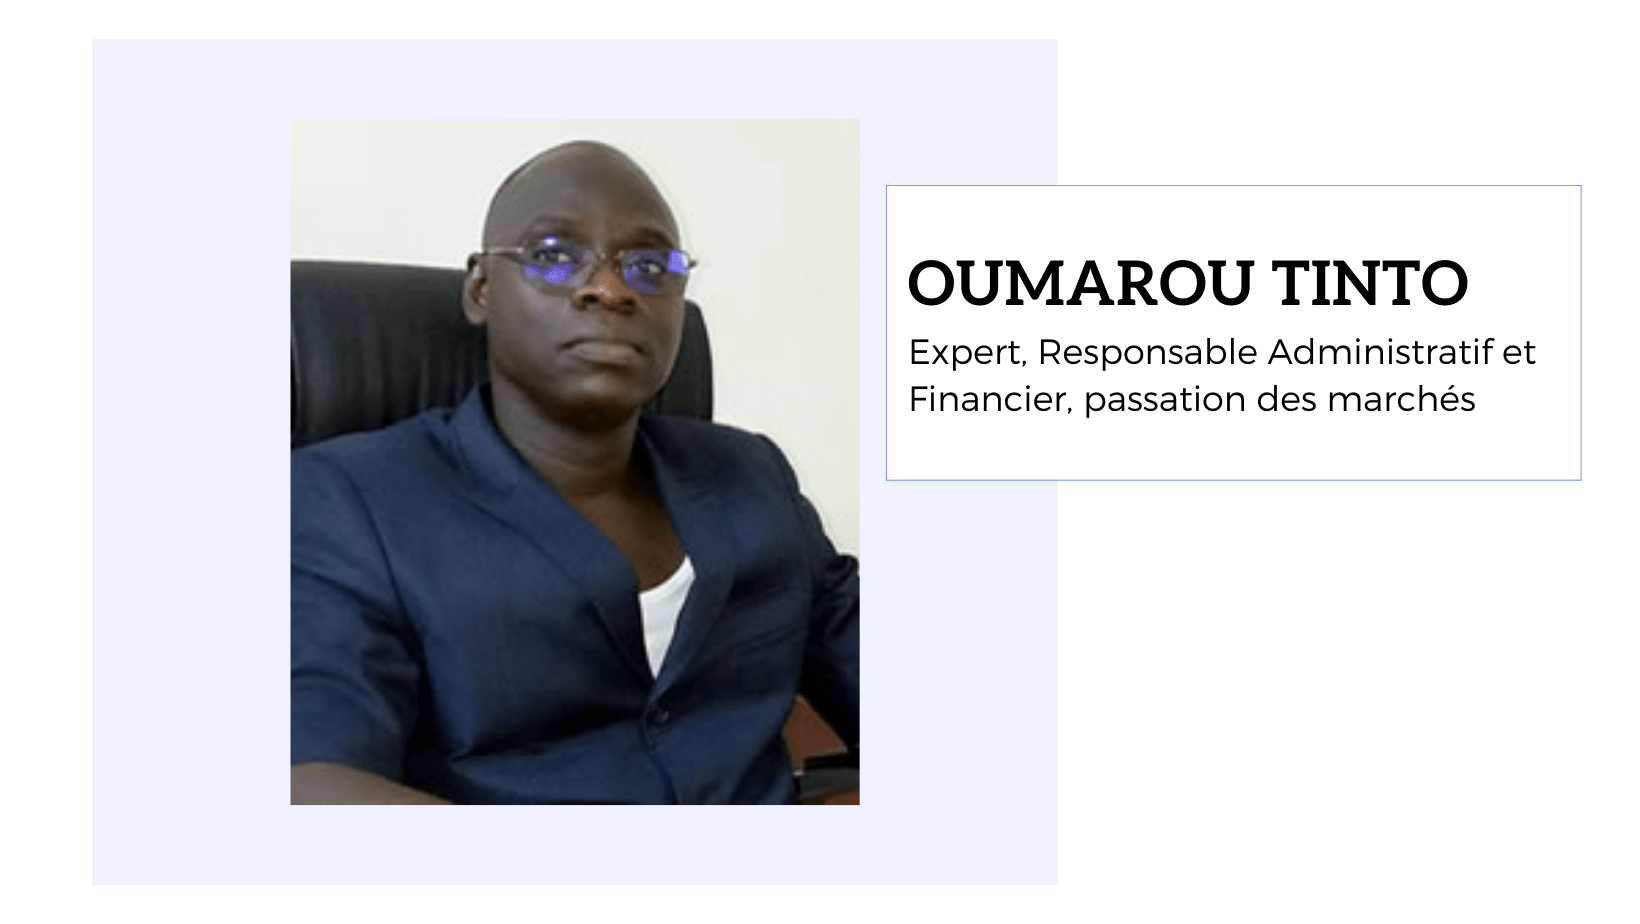 Oumarou TINTO<br />
Expert, Responsable Administratif et Financier, passation des marchés